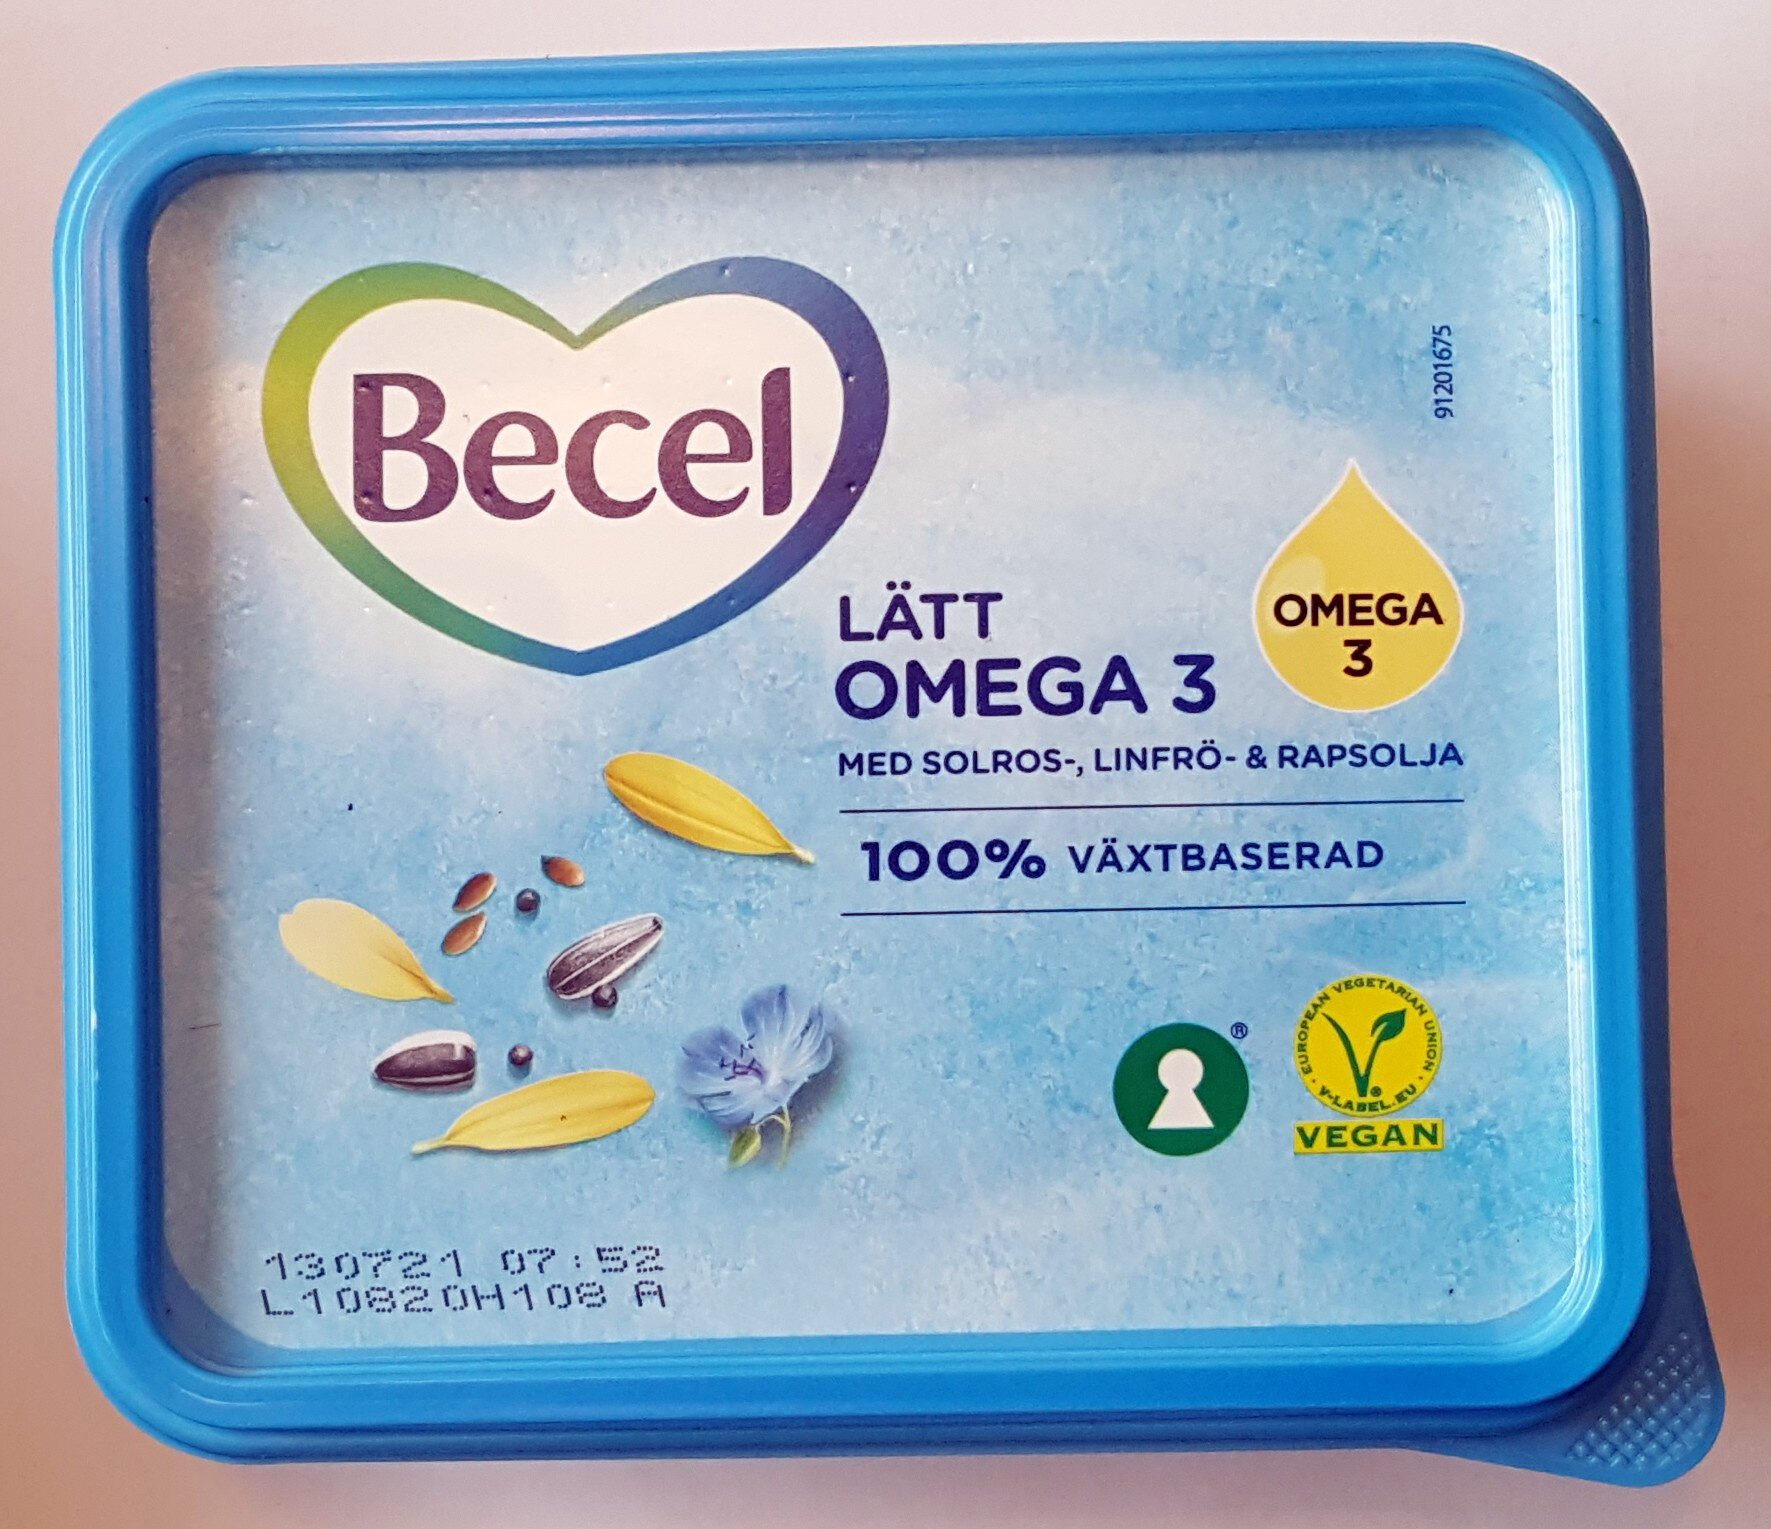 Lätt Omega 3 - Produkt